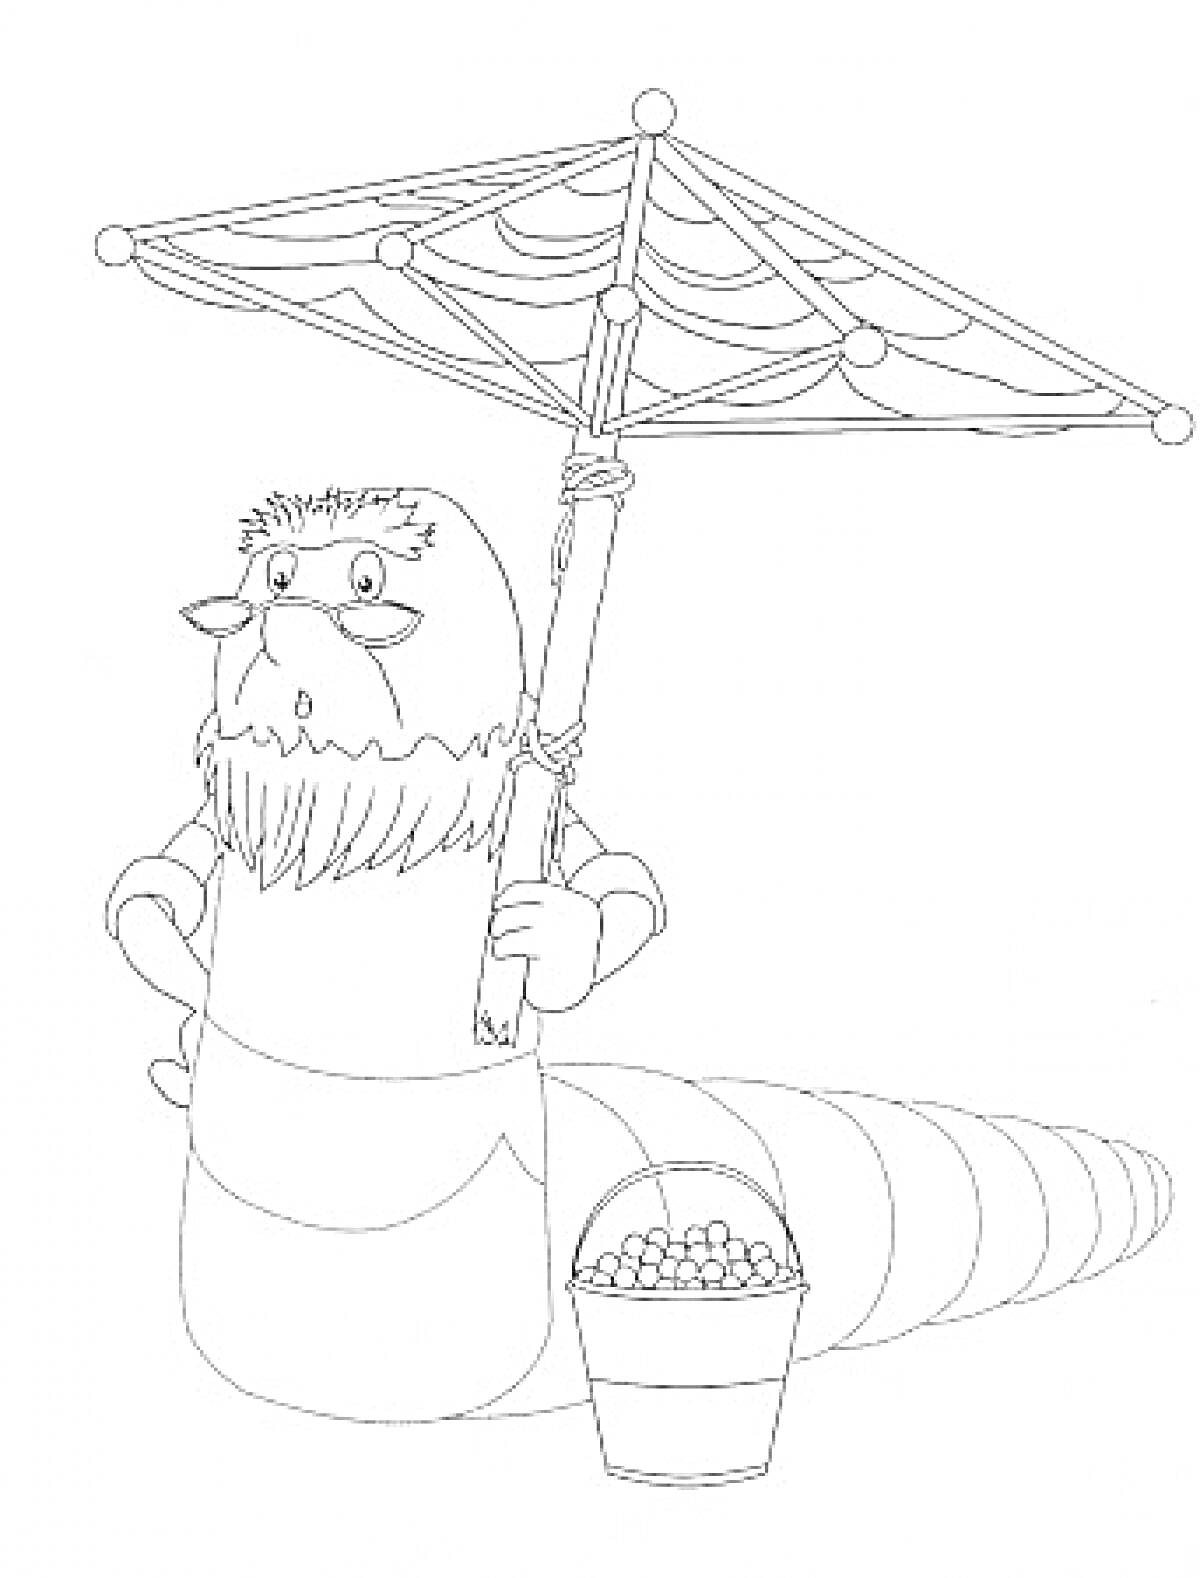 Раскраска Лунтик. Дед Шер в очках держит зонтик и стоит рядом с ведром